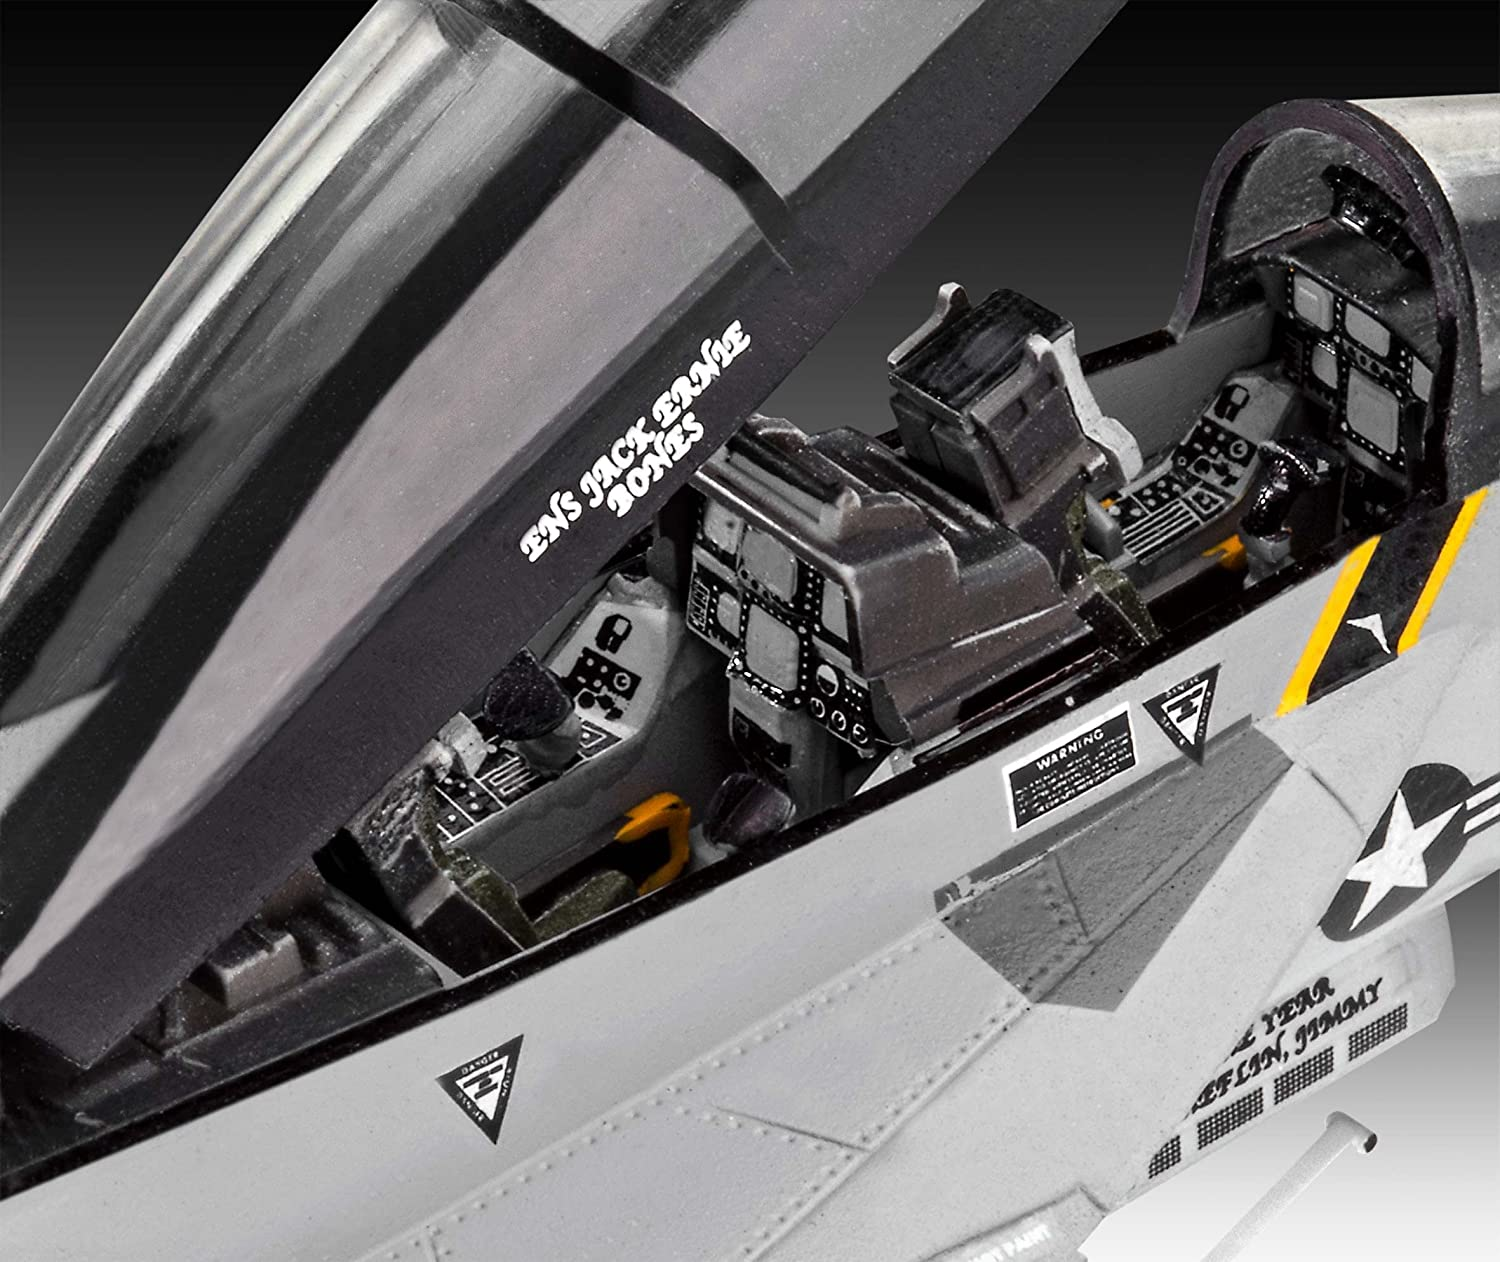 REVELL F/A-18F Super Hornet Modellbau Modell